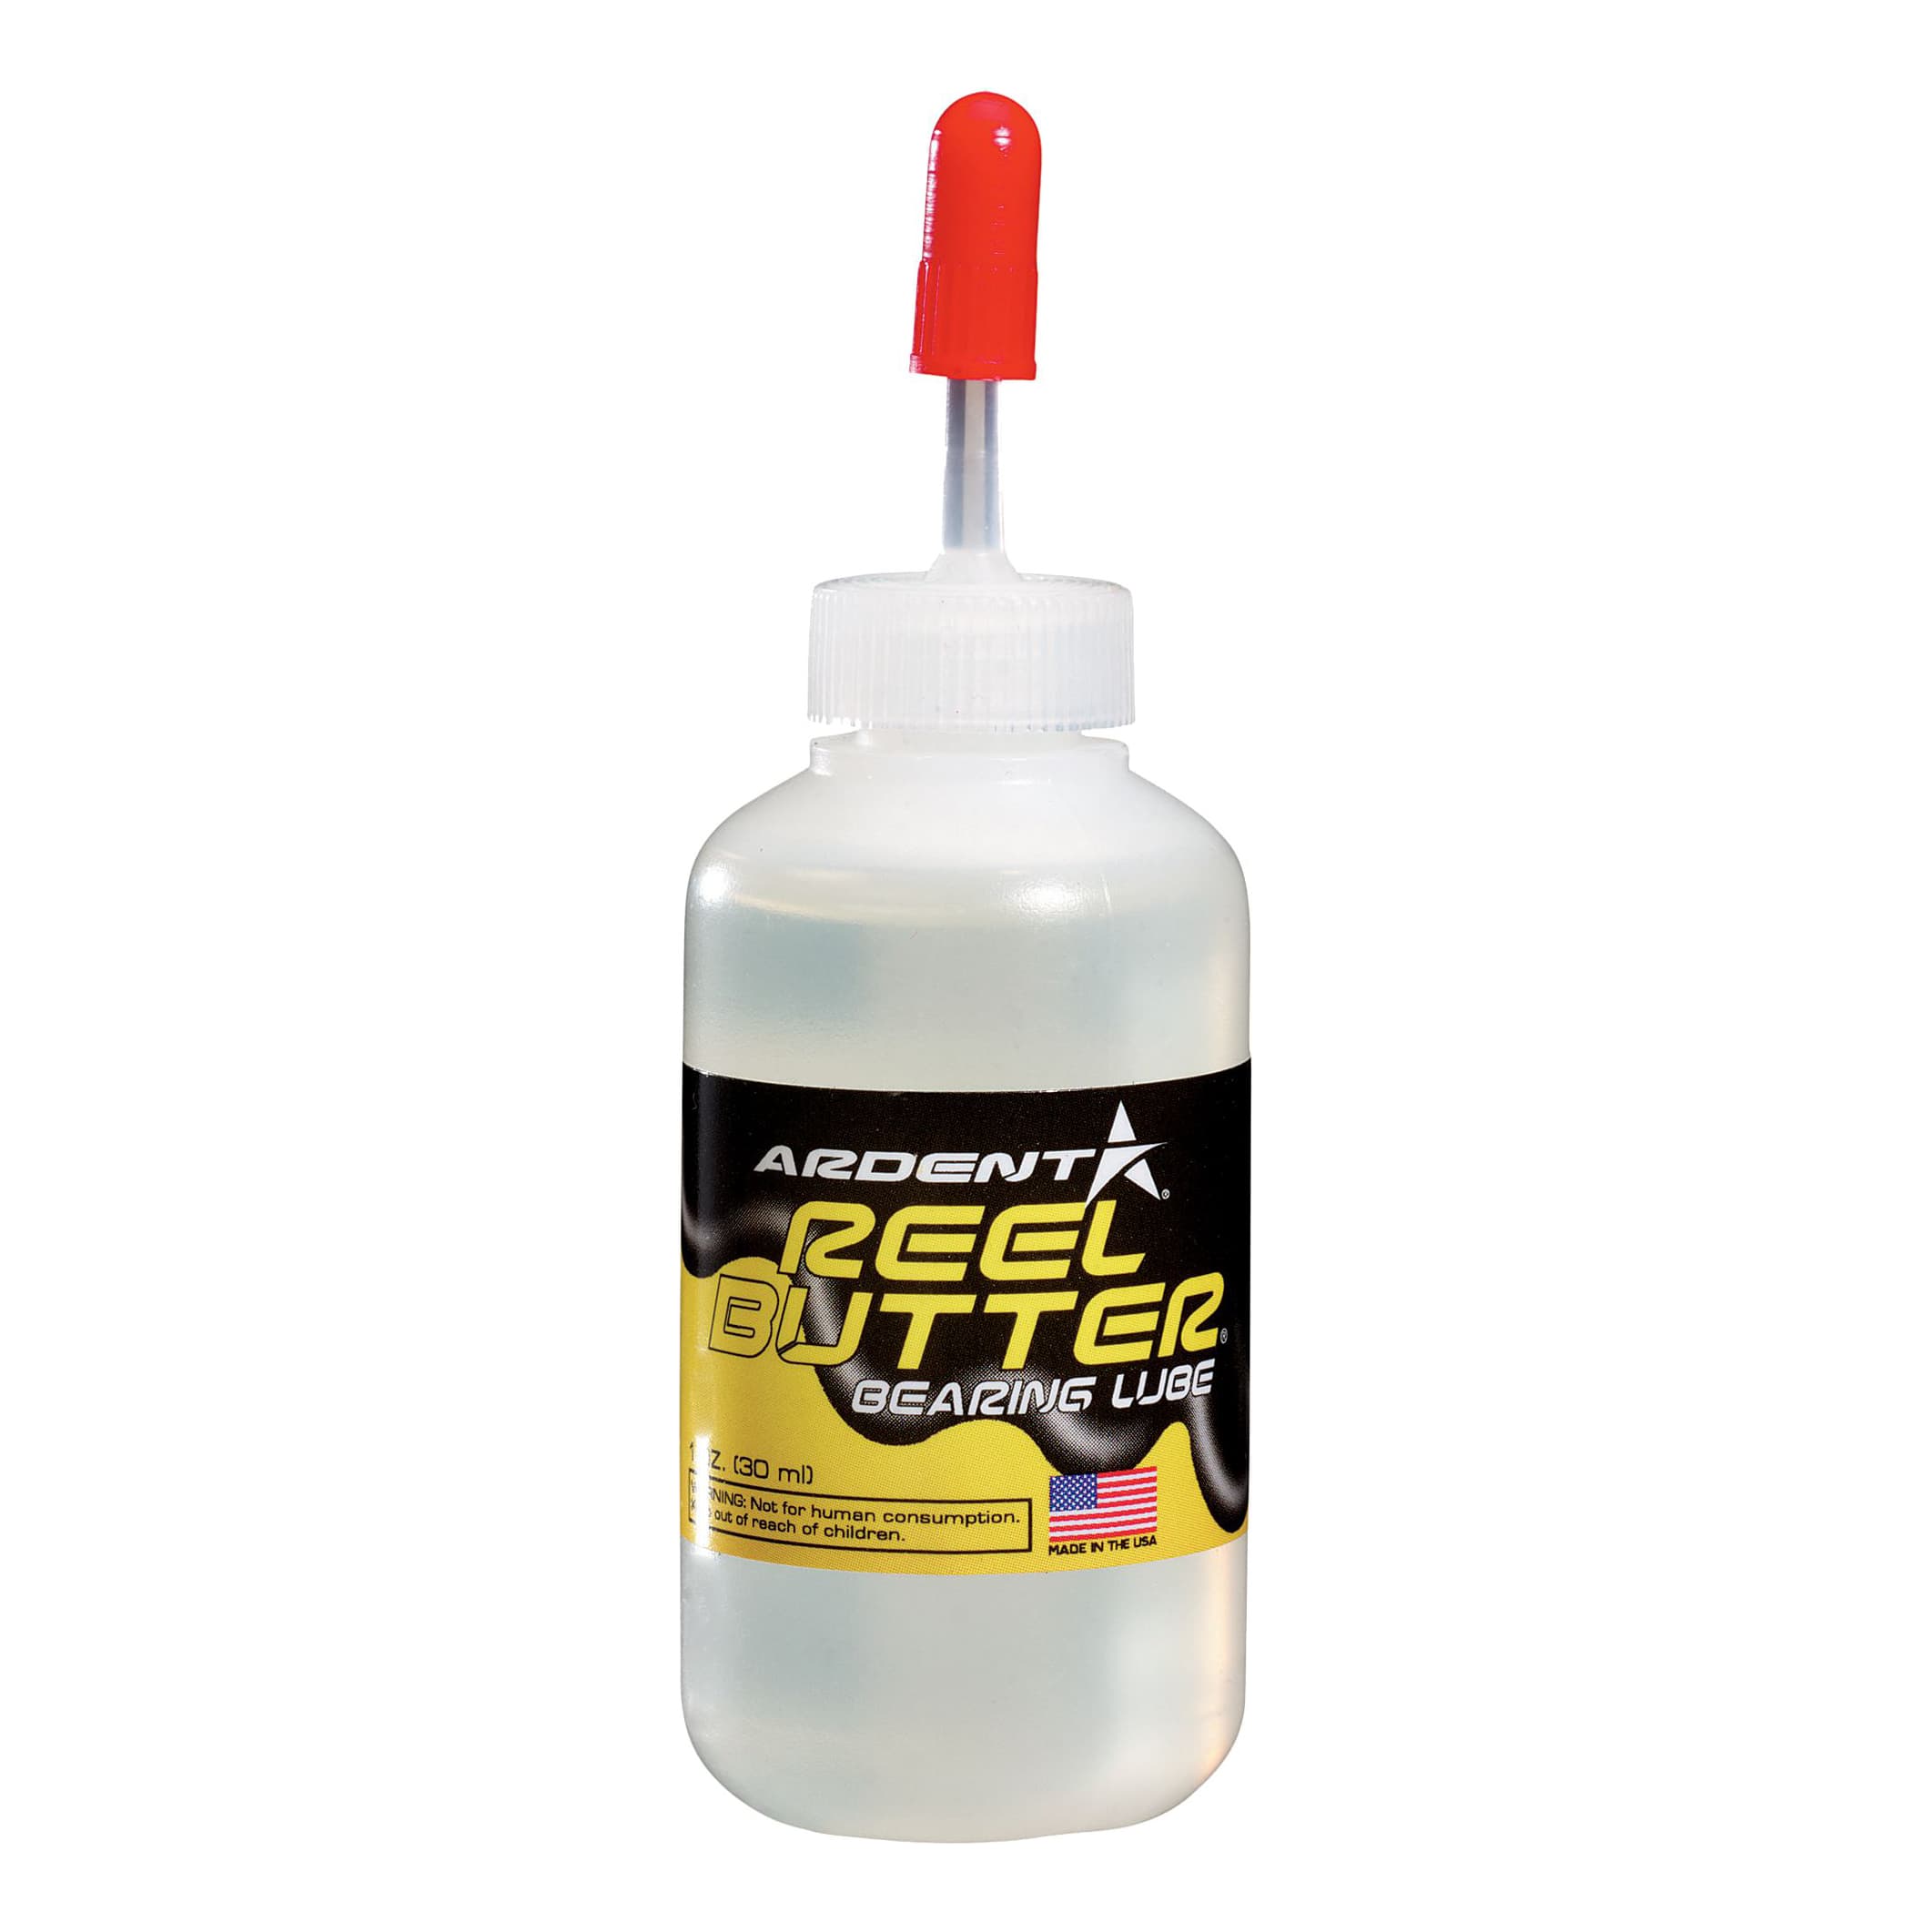 Ardent Reel Kleen Cleaning Kit for Freshwater Reel Maintenance